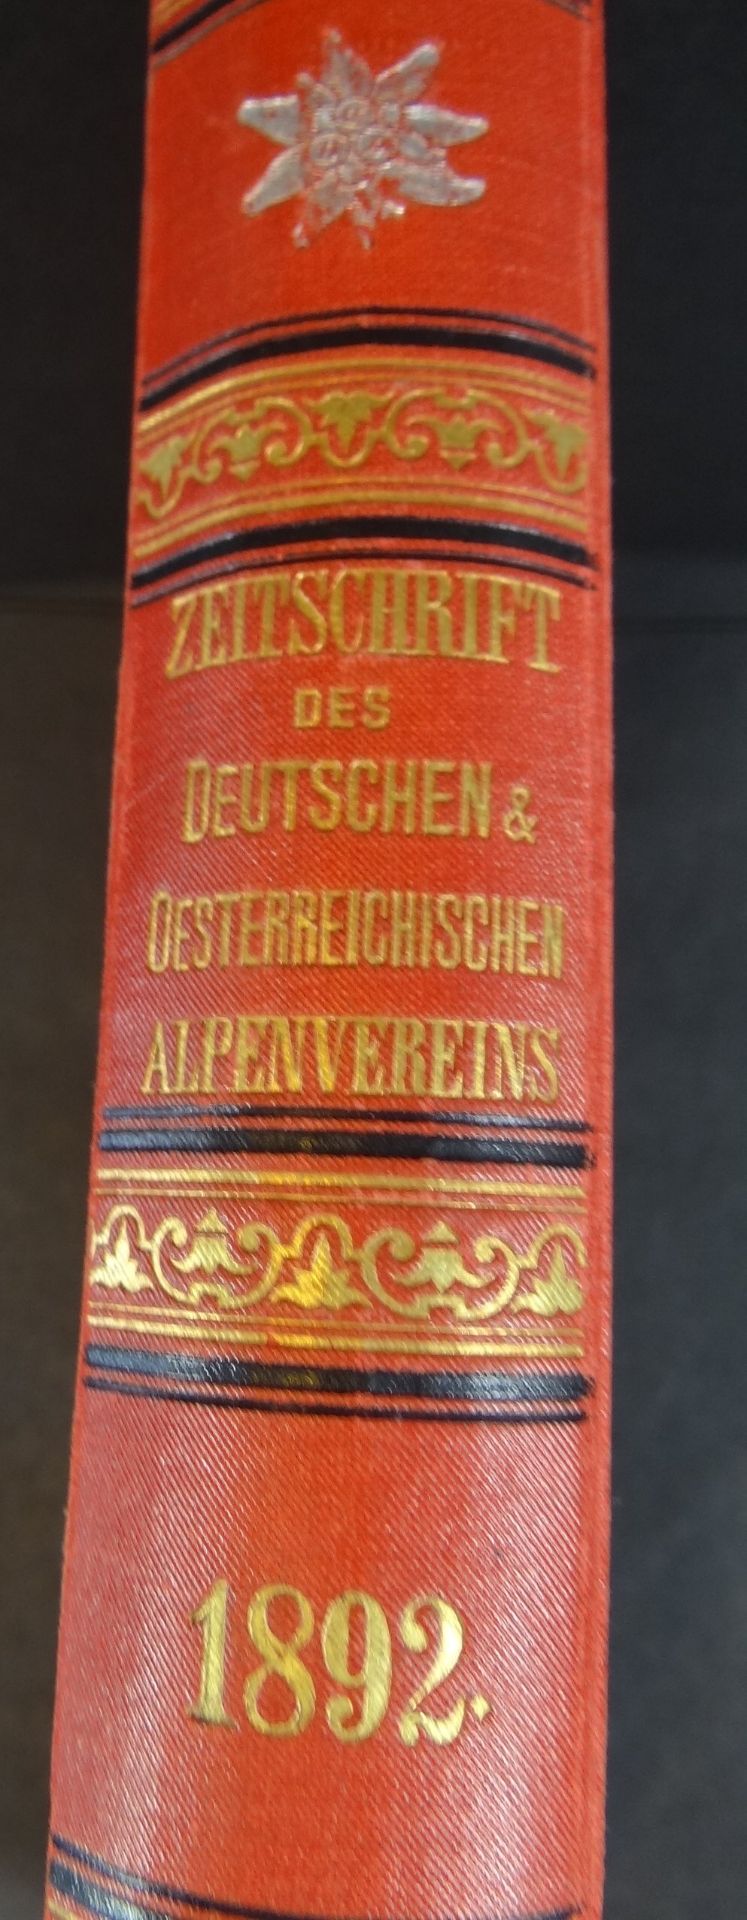 Jahrgang 1892 der "Zeitschrift des deutschen und österr. Alpen-Vereins" fast neuwertig, illustriert - Image 2 of 9